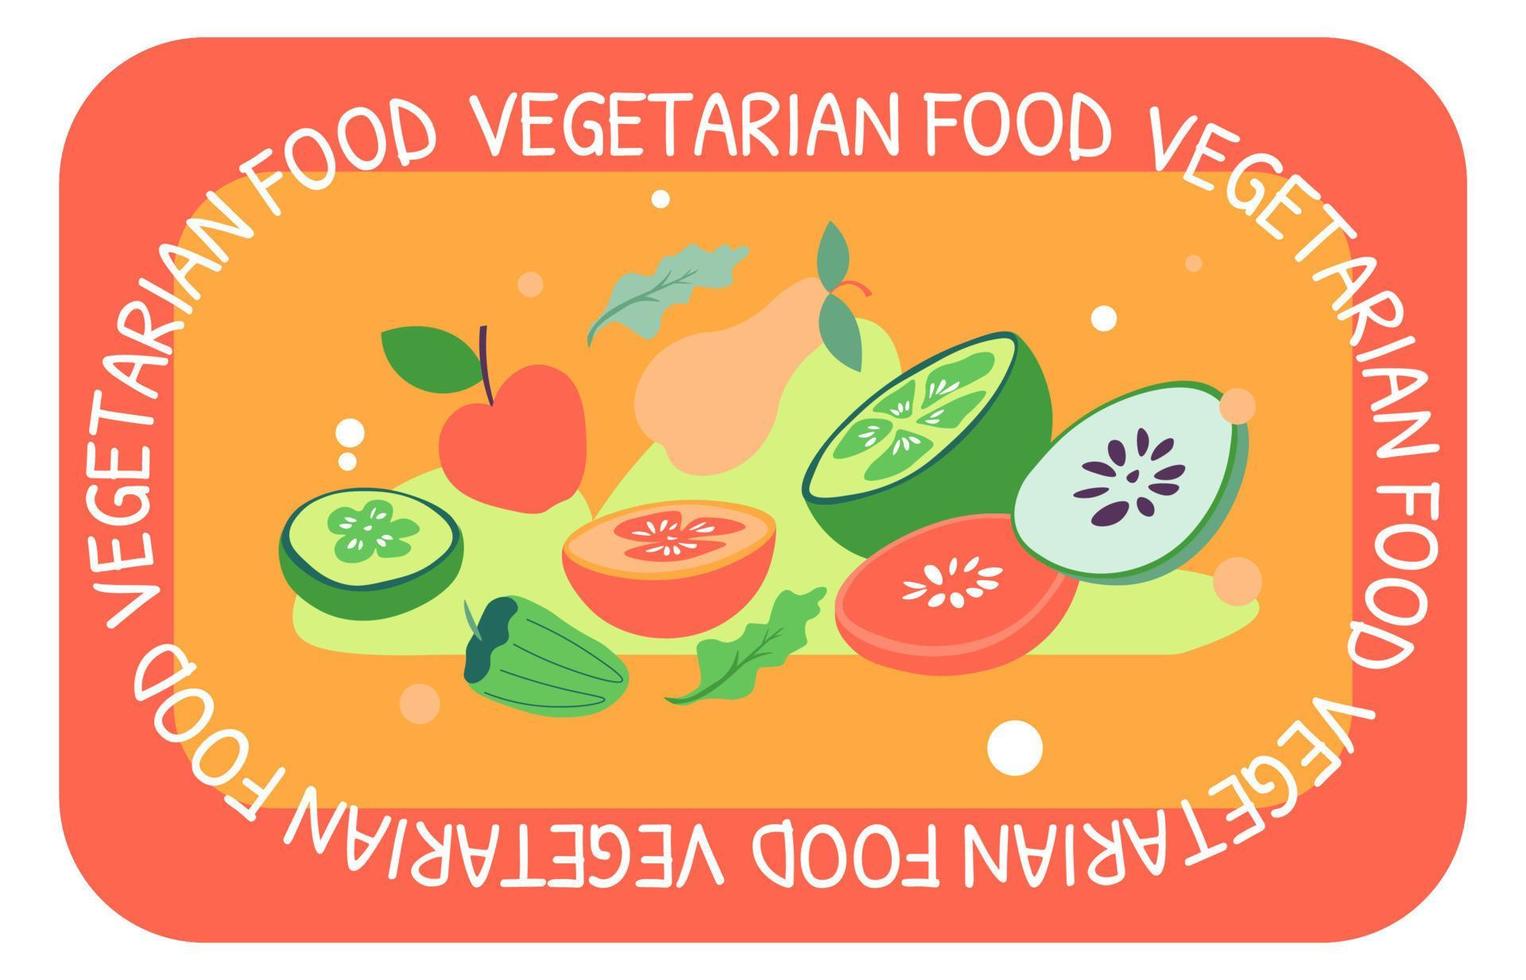 Vegetarian food, organic meal veggies menu banner vector